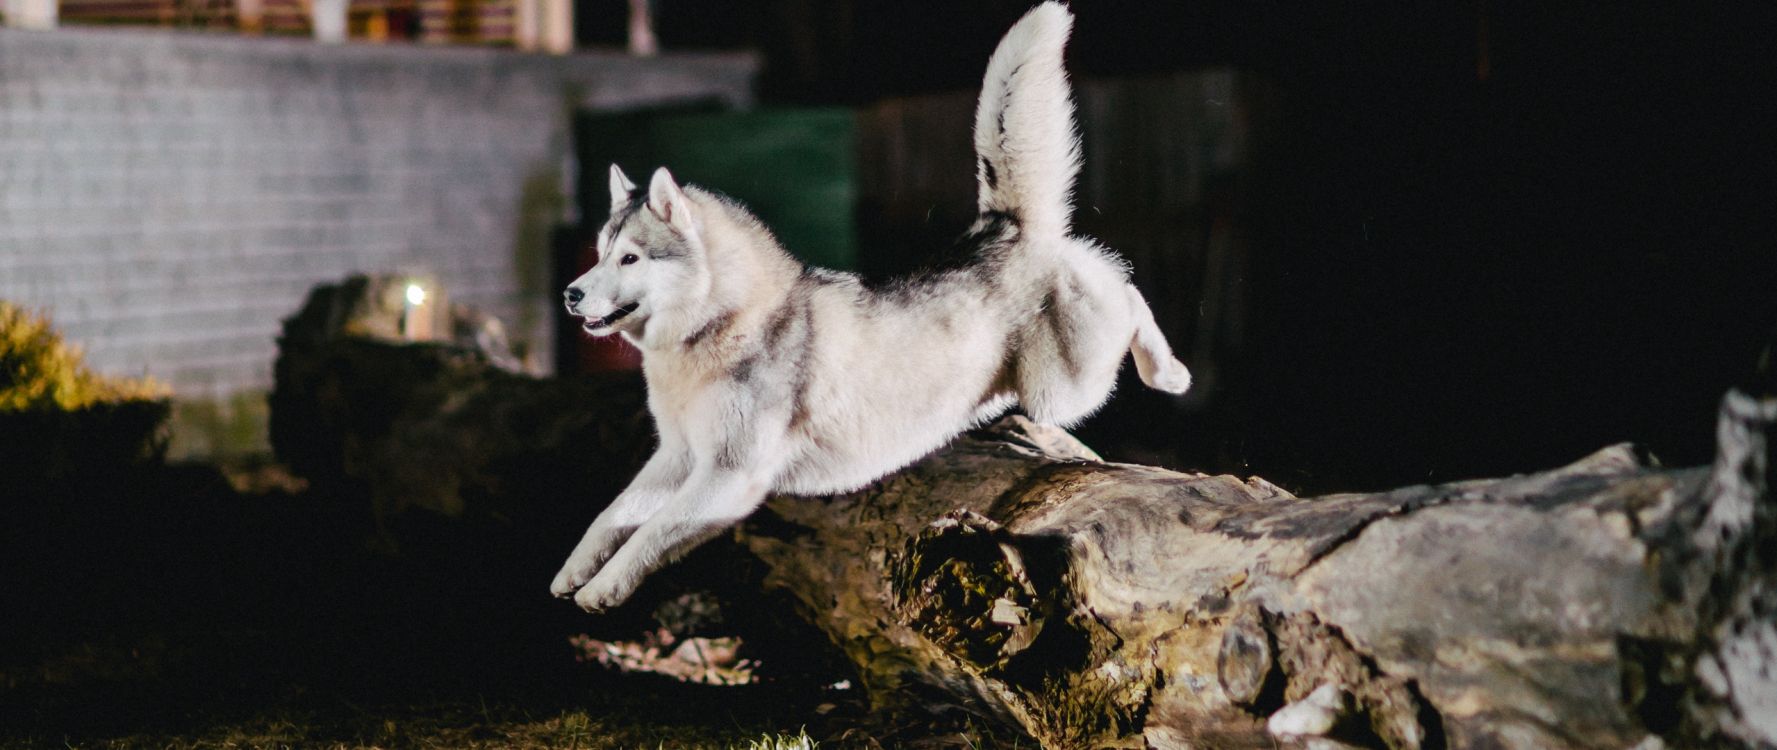 阿拉斯加雪橇犬, 品种的狗, 赫斯基, 那只狼狗, 小狗 壁纸 2560x1080 允许